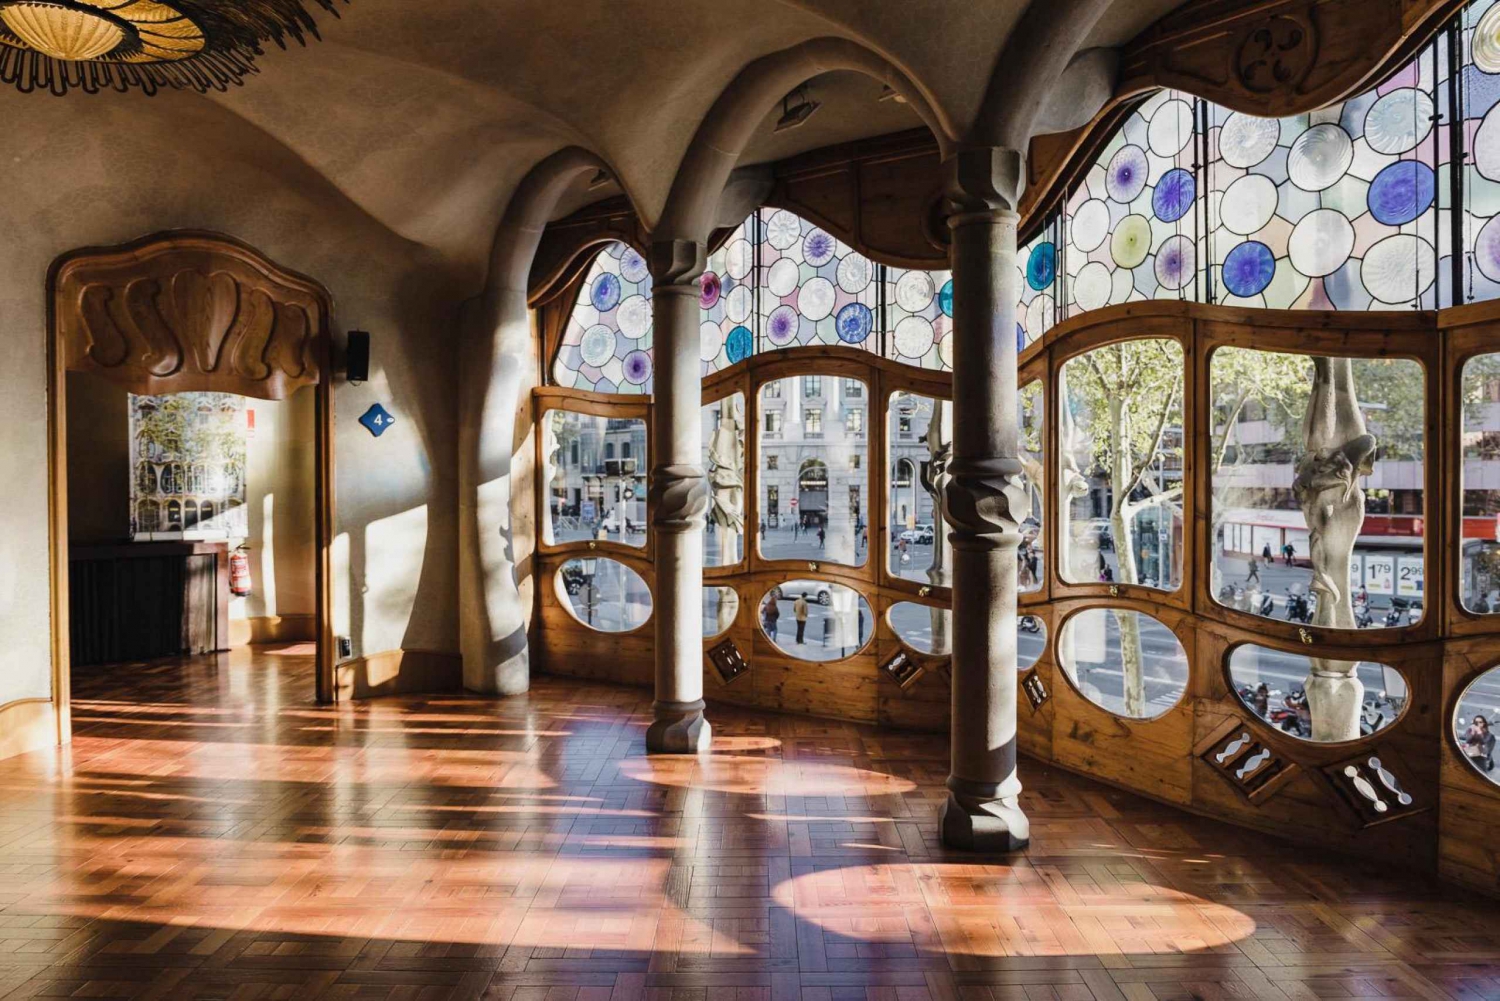 Barcelona: Guidad Gaudi-tur till Sagrada, husen och Park Guell